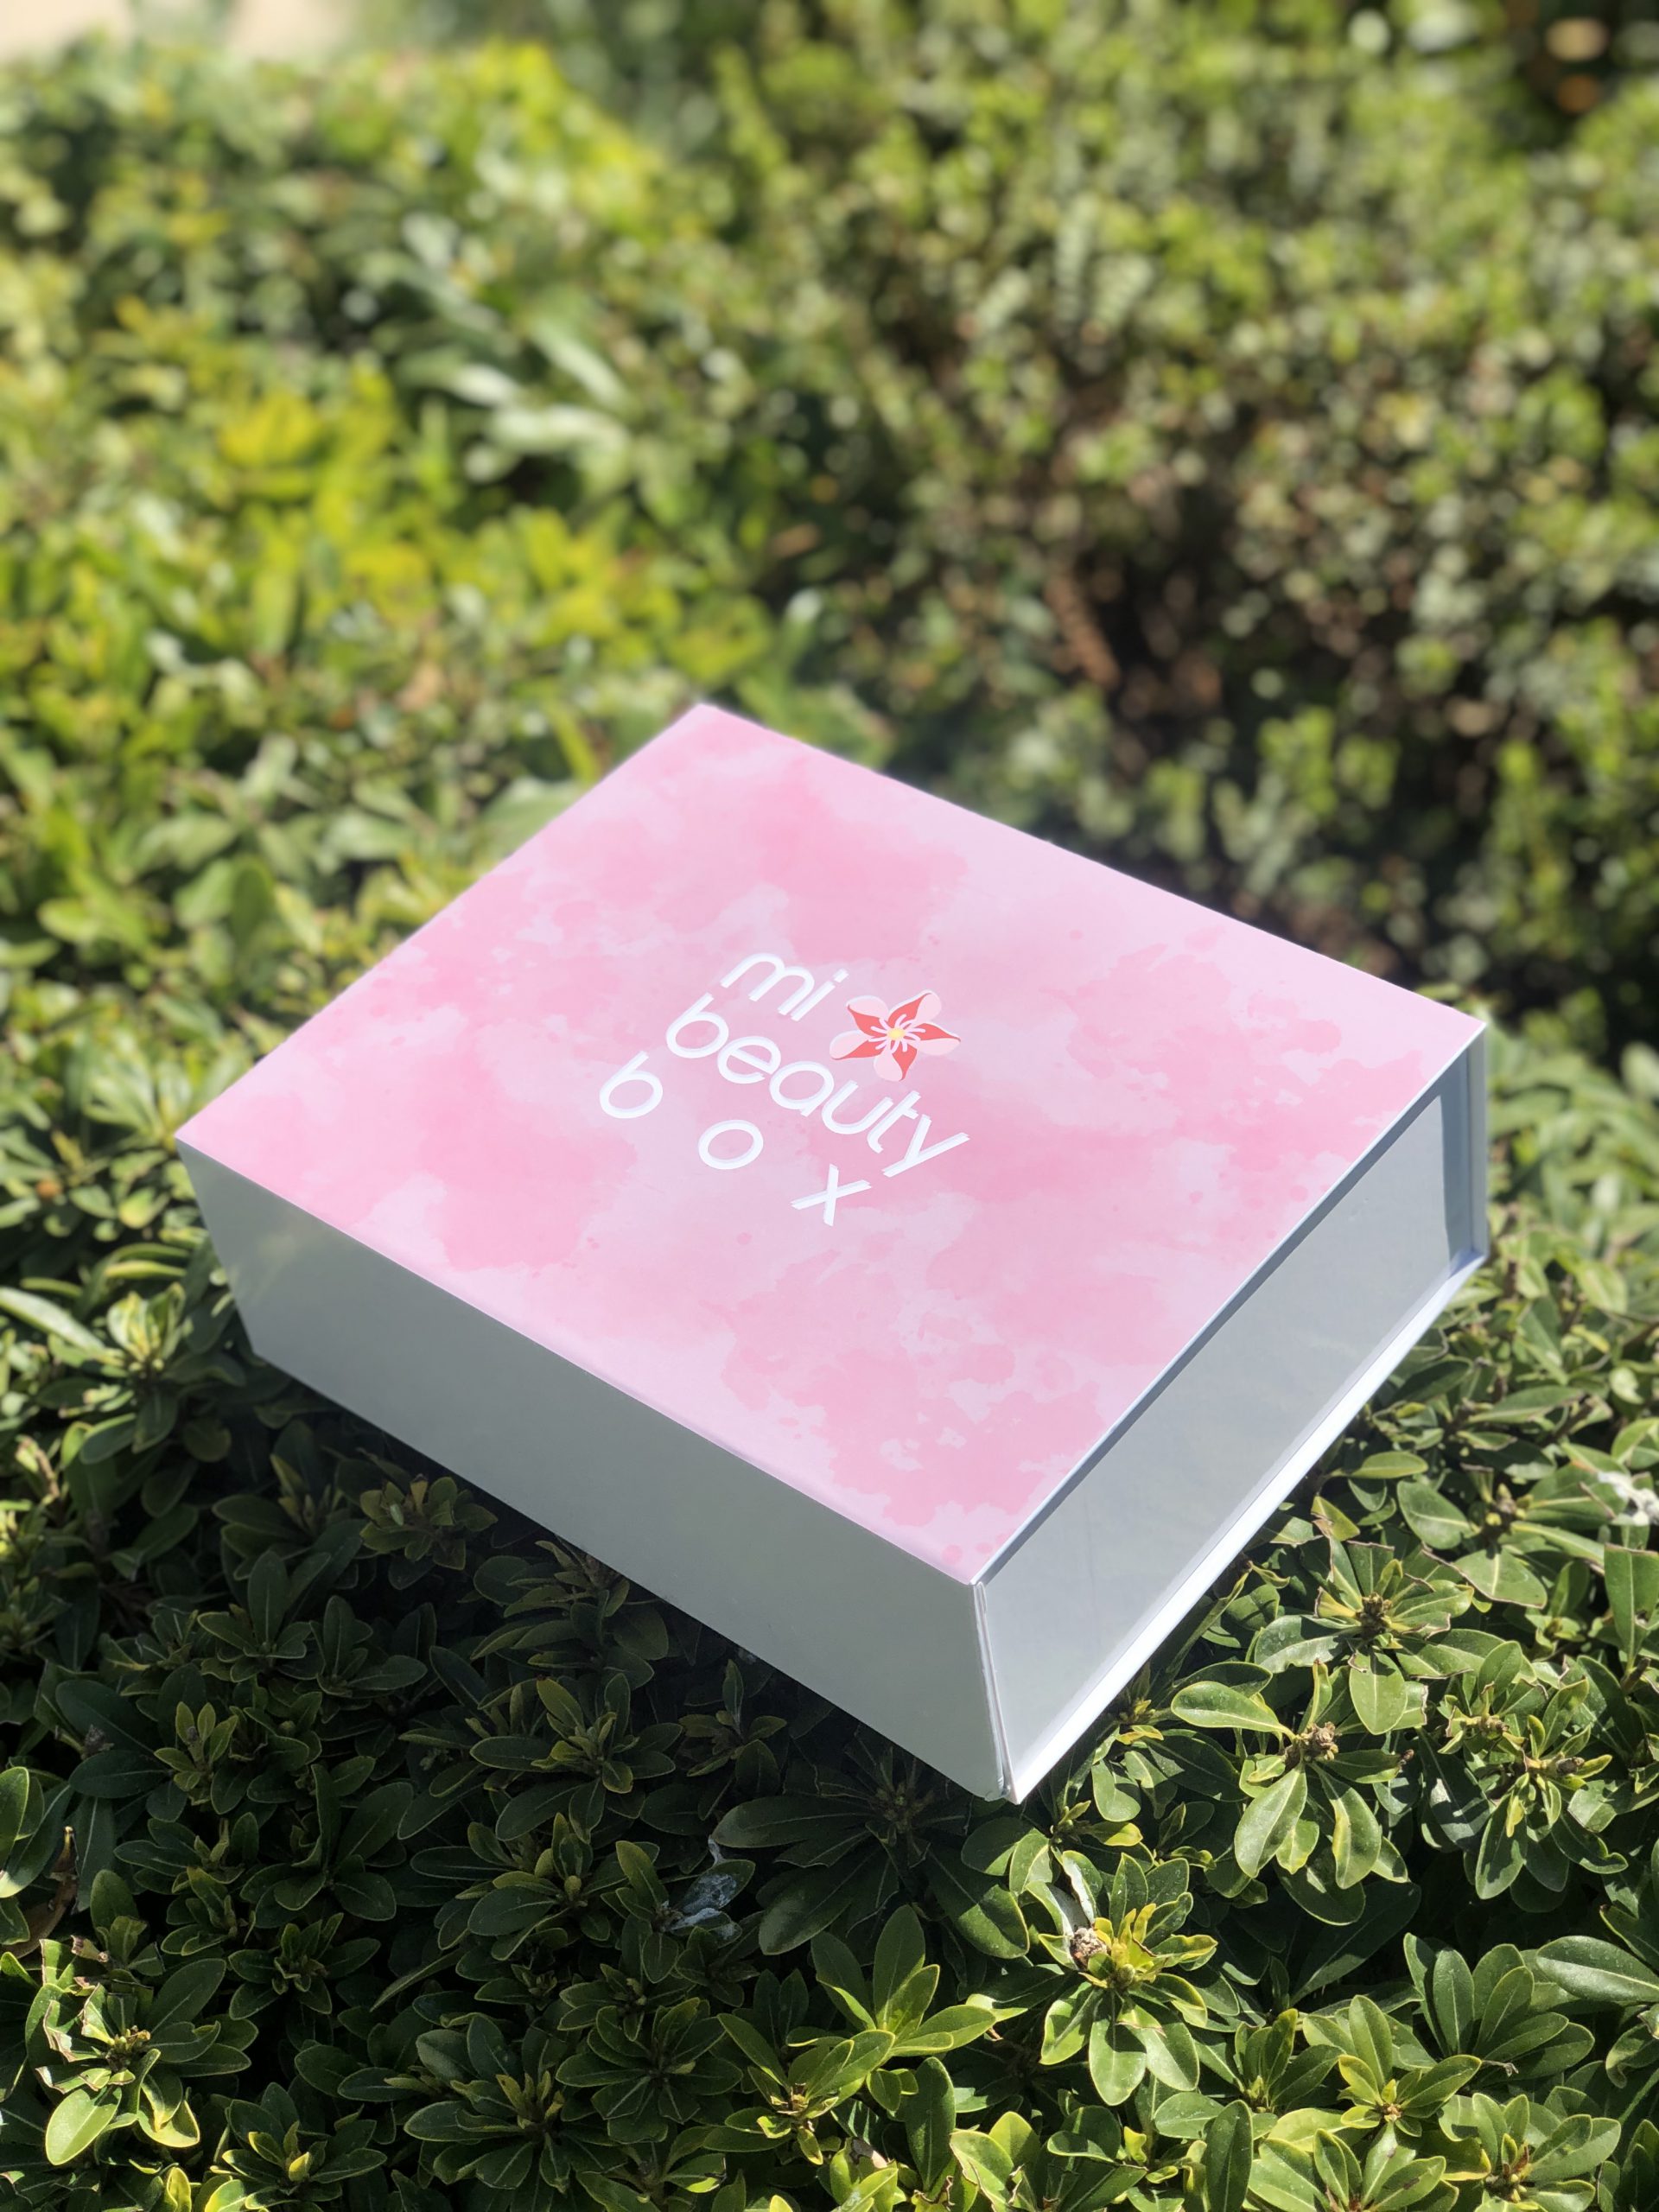 Mi Beauty Box – Mi Beauty Box es una experiencia única de cajas de belleza  que te permiten descubrir productos a un precio mas accesible. Arriésgate  comprando nuestras cajas misteriosas y déjate